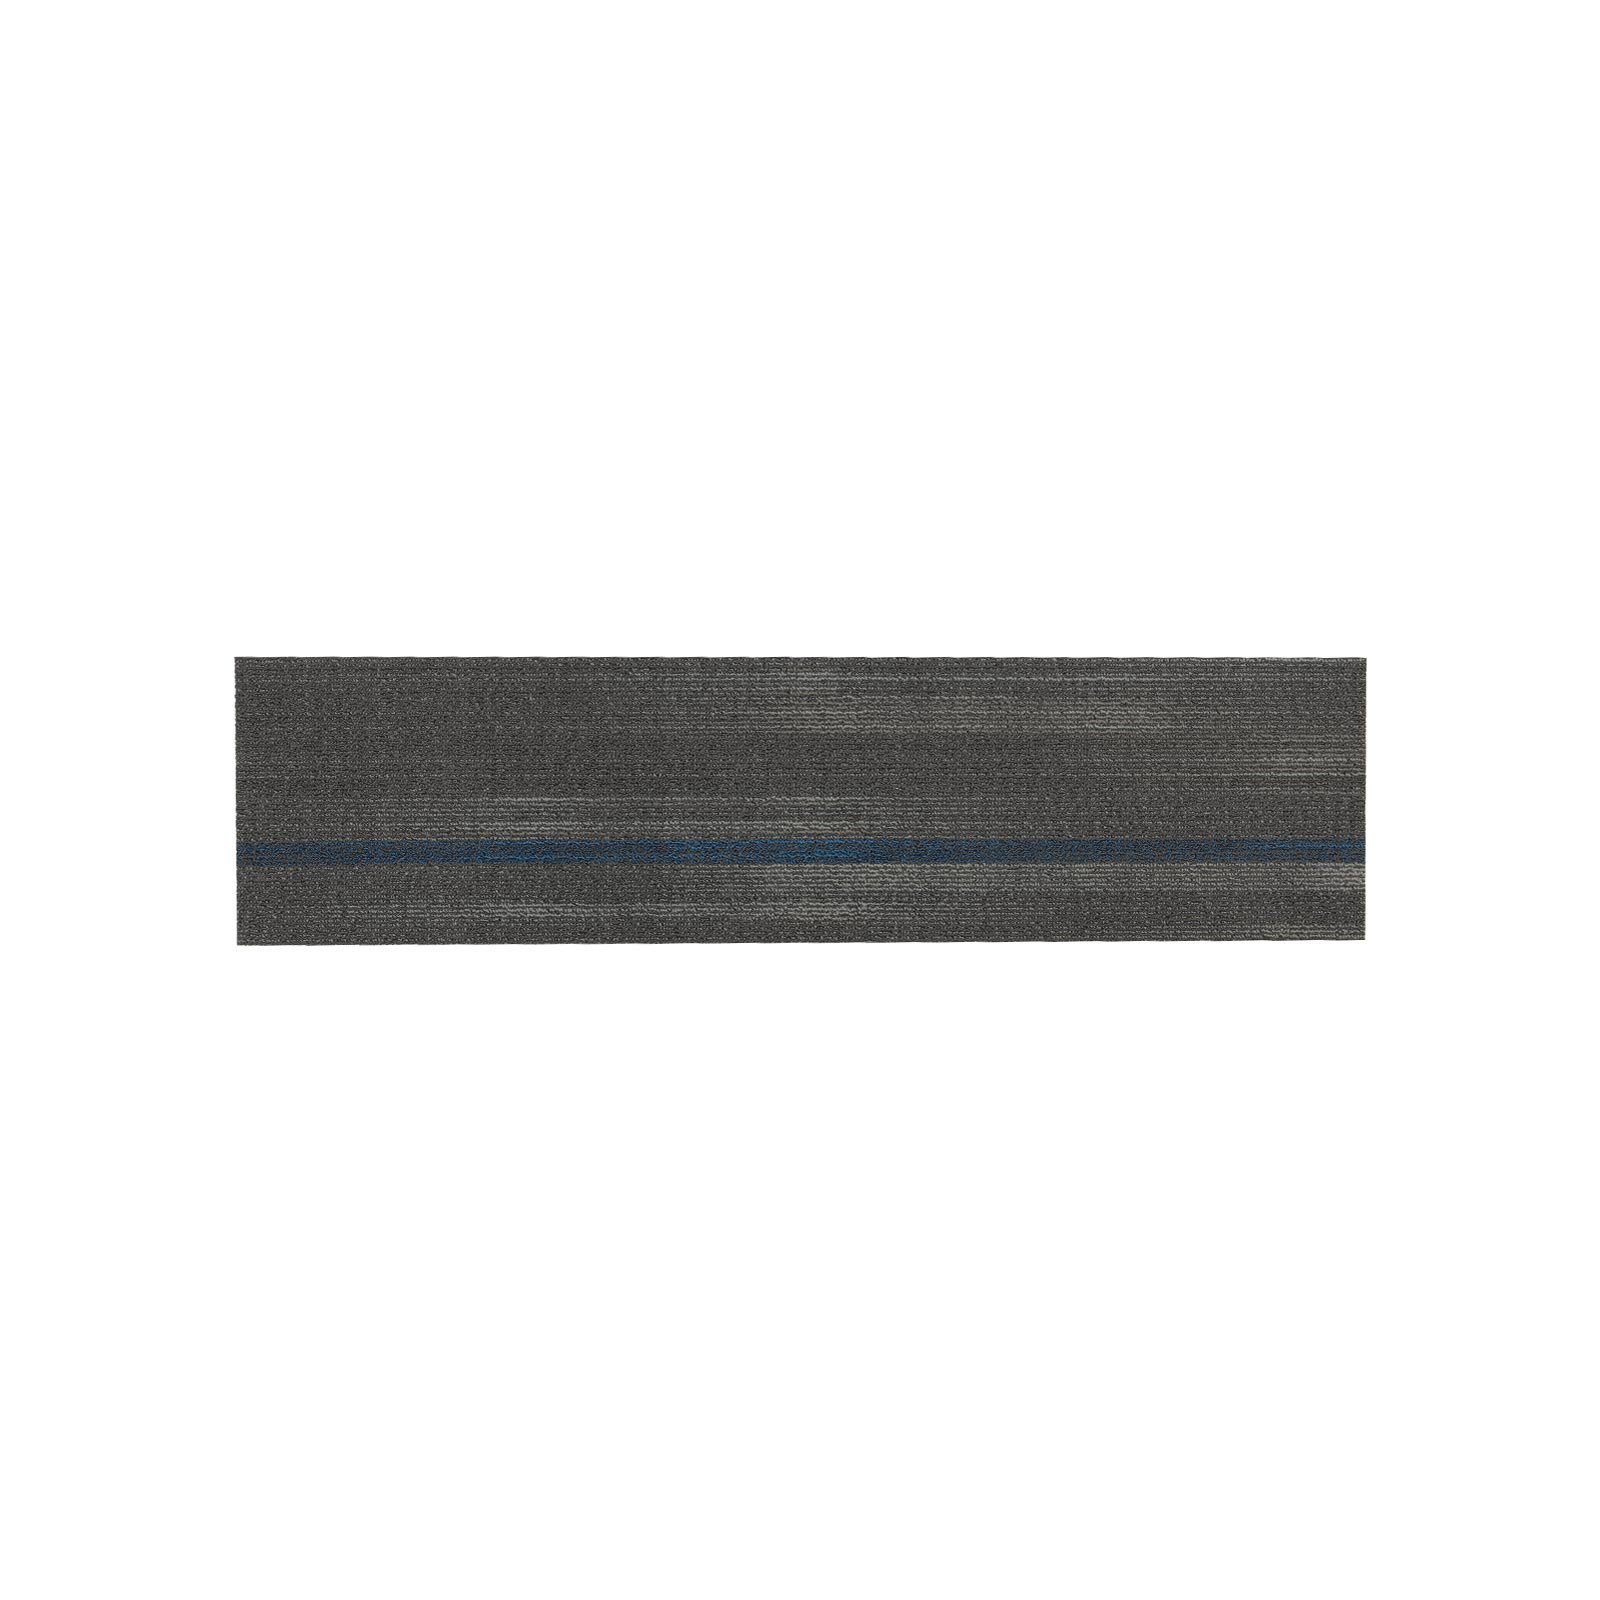 Paisley, Bodenfliese, Bodendiele, Teppichfliese 6 mm Graublau Bodenschutz, Karat, Höhe: